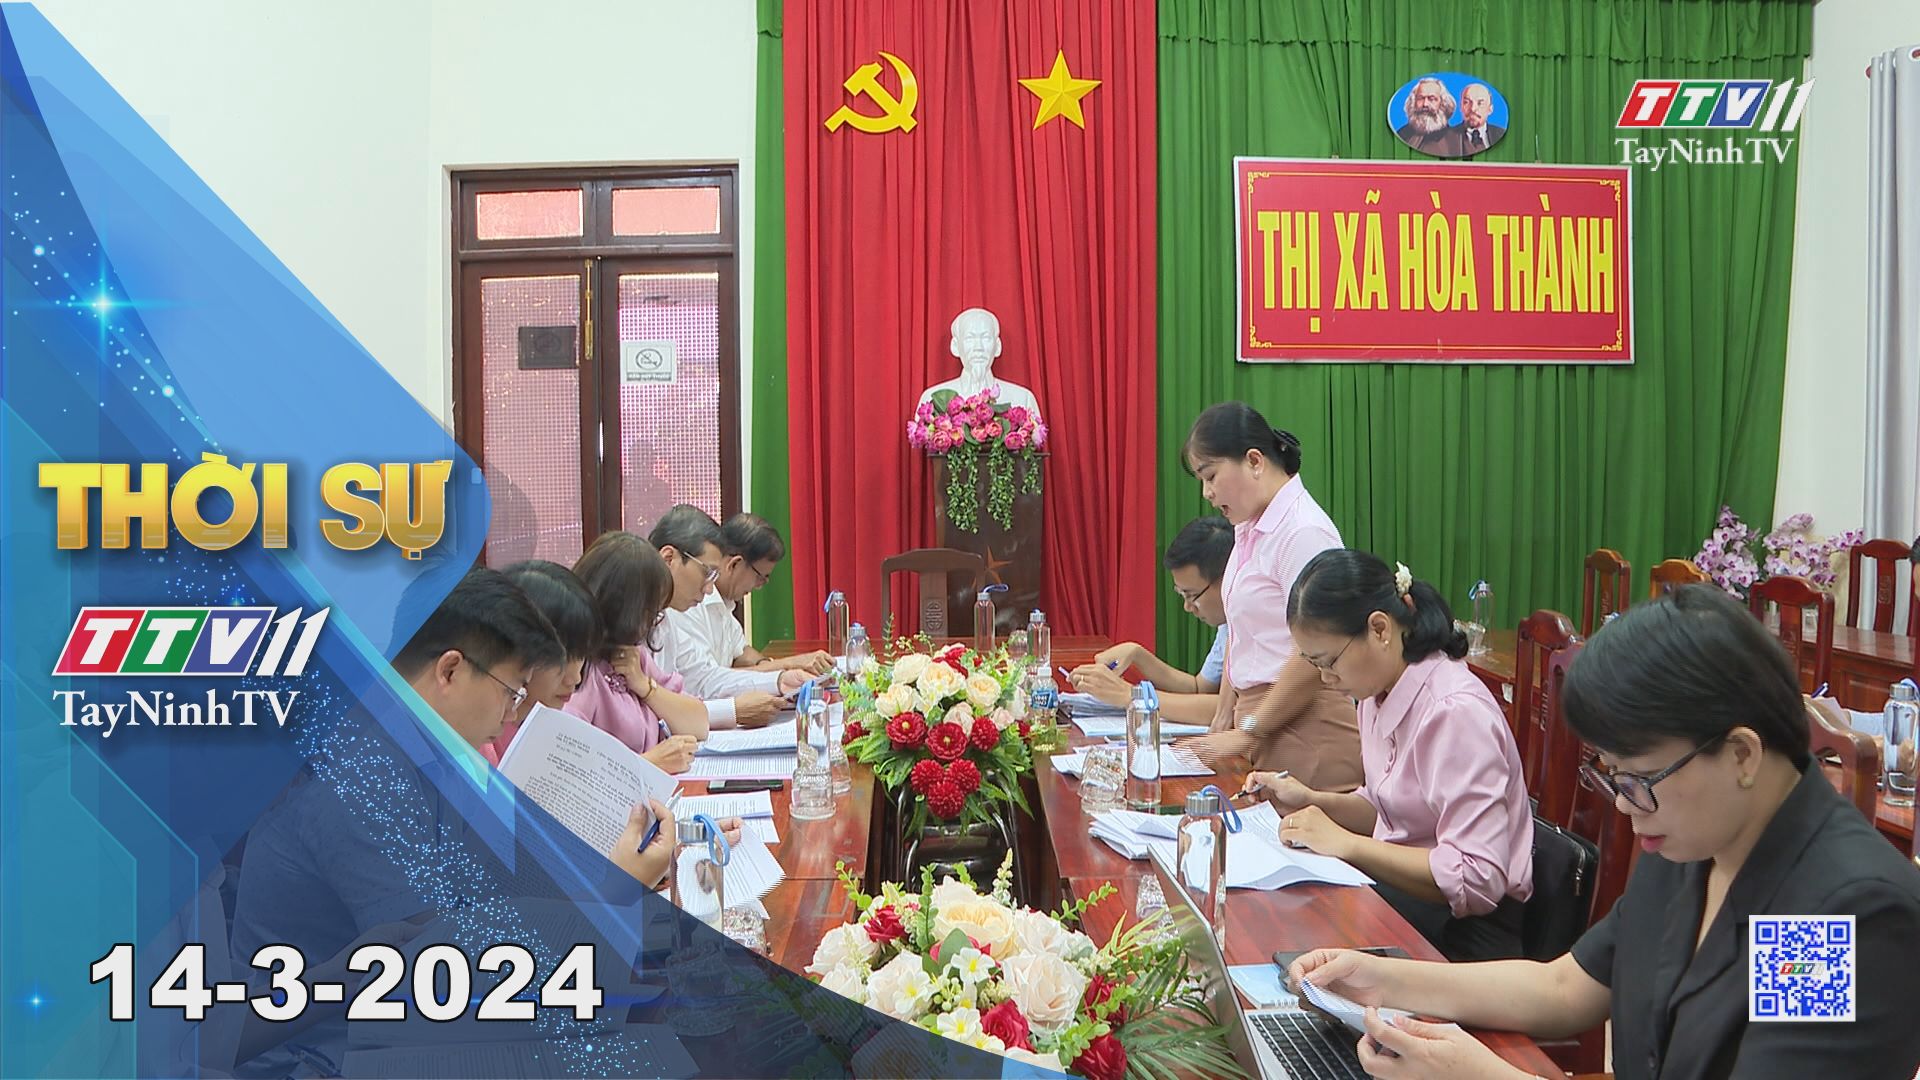 Thời sự Tây Ninh 14-3-2024 | Tin tức hôm nay | TayNinhTV